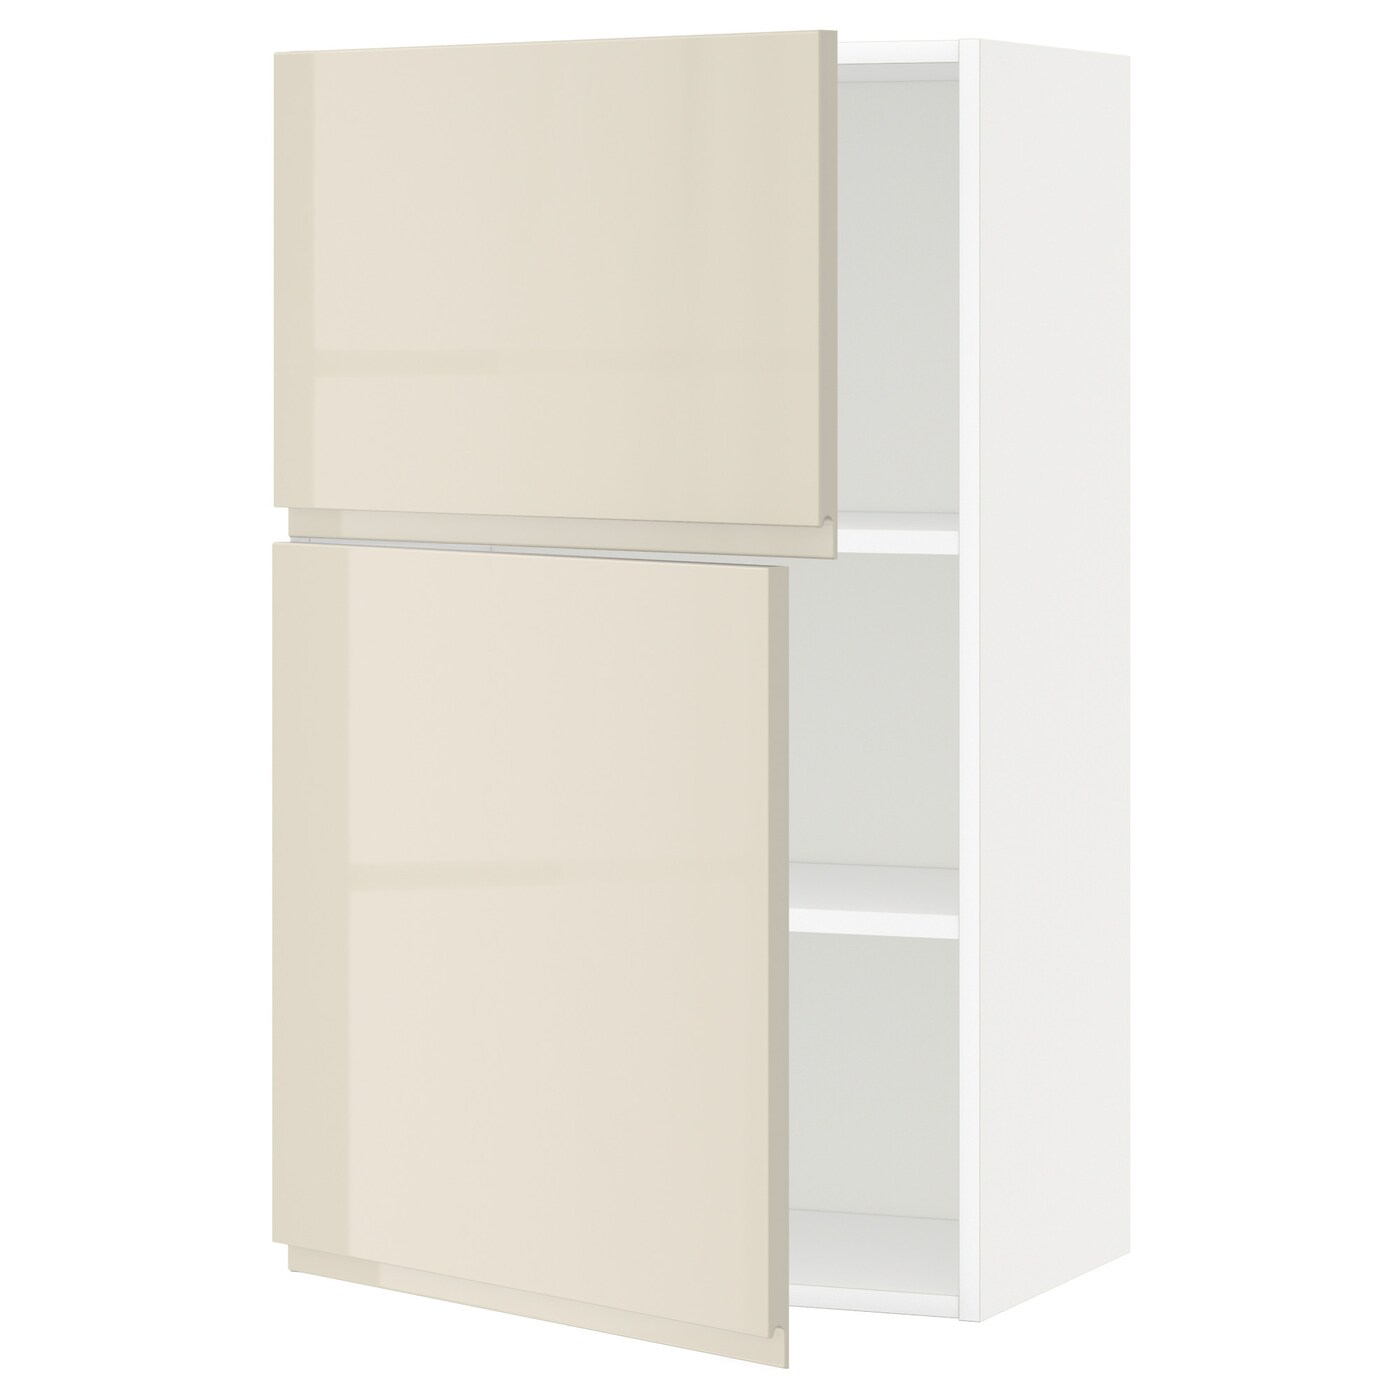 Навесной шкаф с полкой - METOD IKEA/ МЕТОД ИКЕА, 100х60 см, белый/бежевый